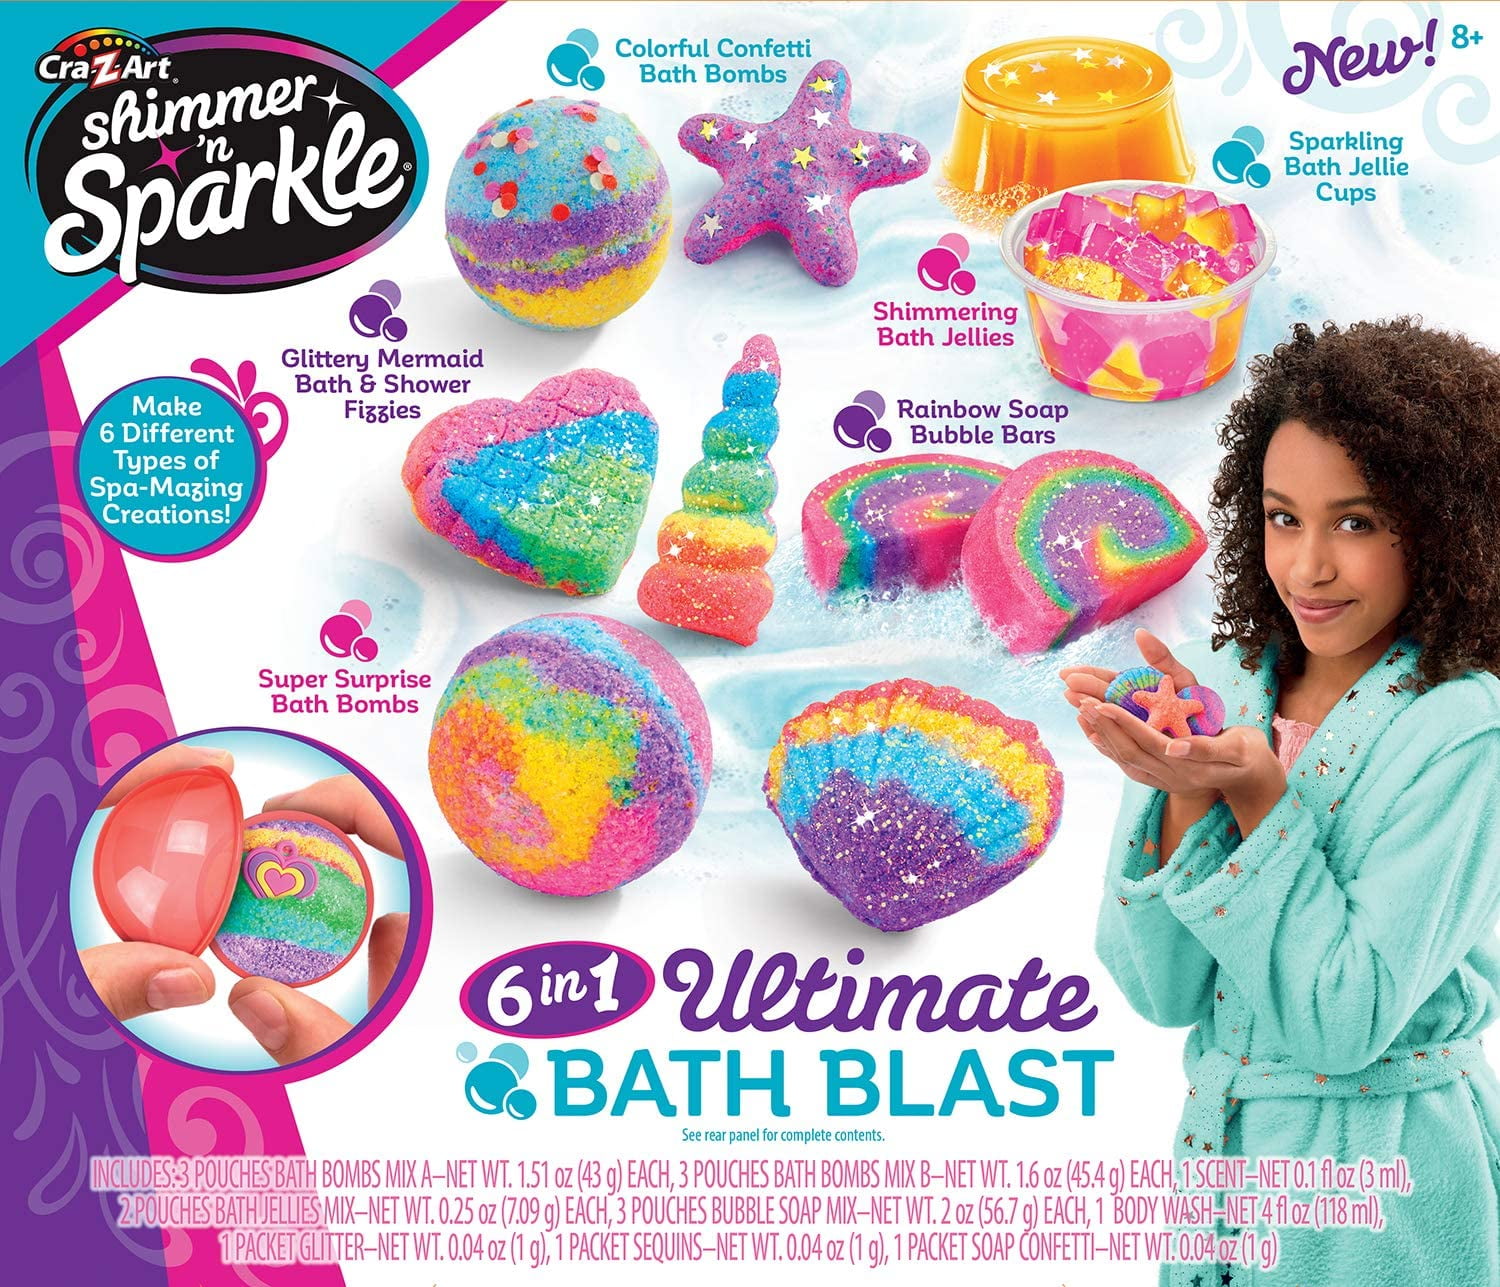 Cra-Z-Art Shimmer & Sparkle 6 N 1 Ultimate Bath Blast 